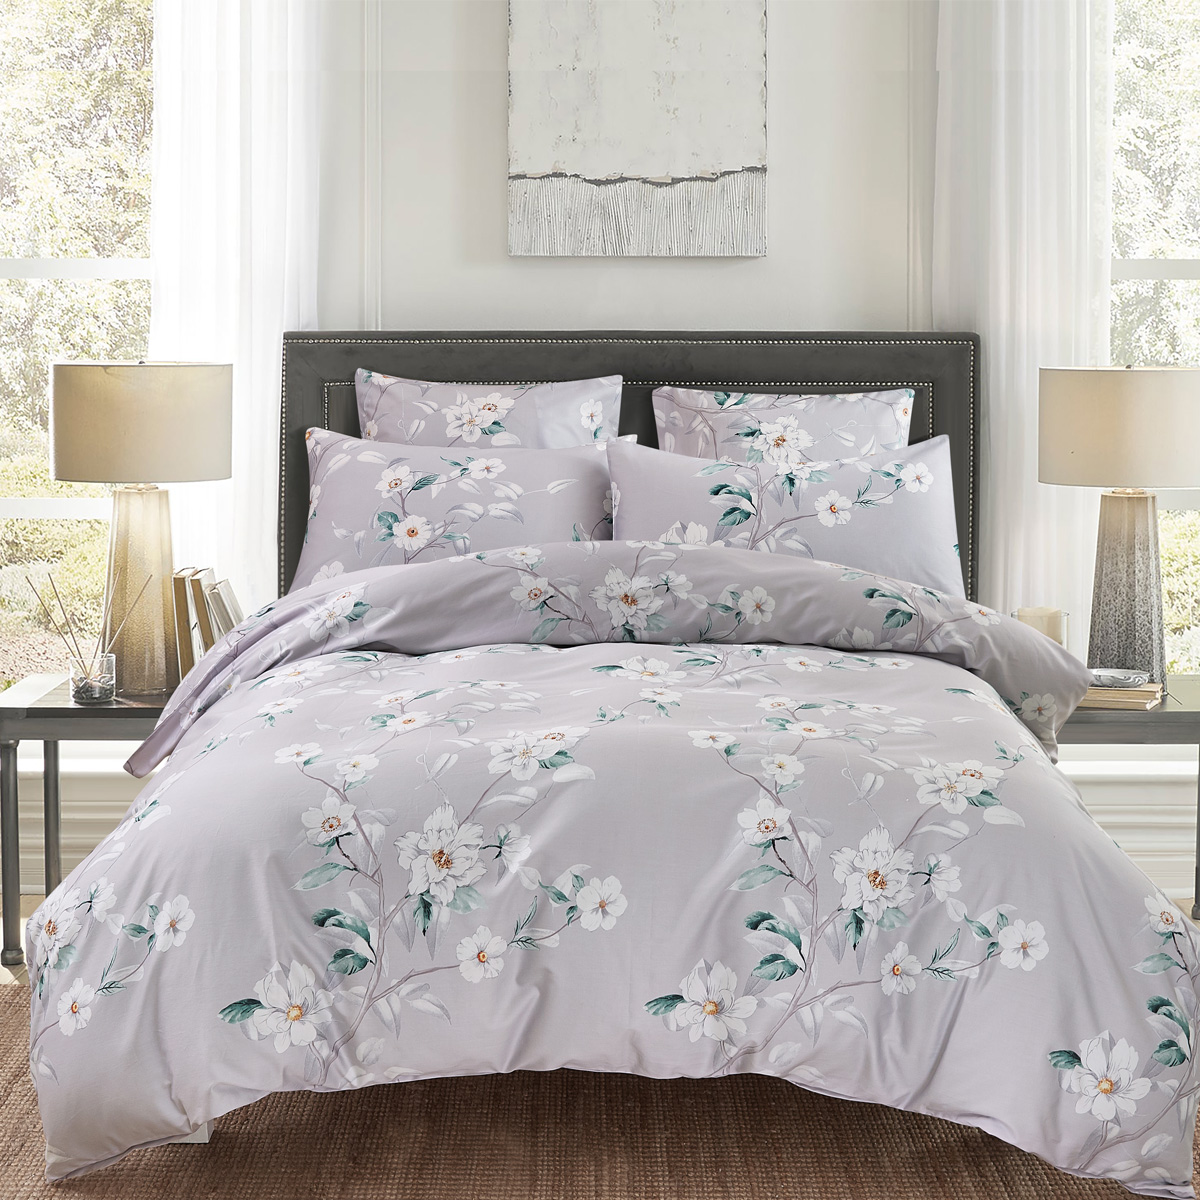 Комплект постельного белья 1,5-спальный Pappel White Flower, серый Pappel EYGCA23058/150200S